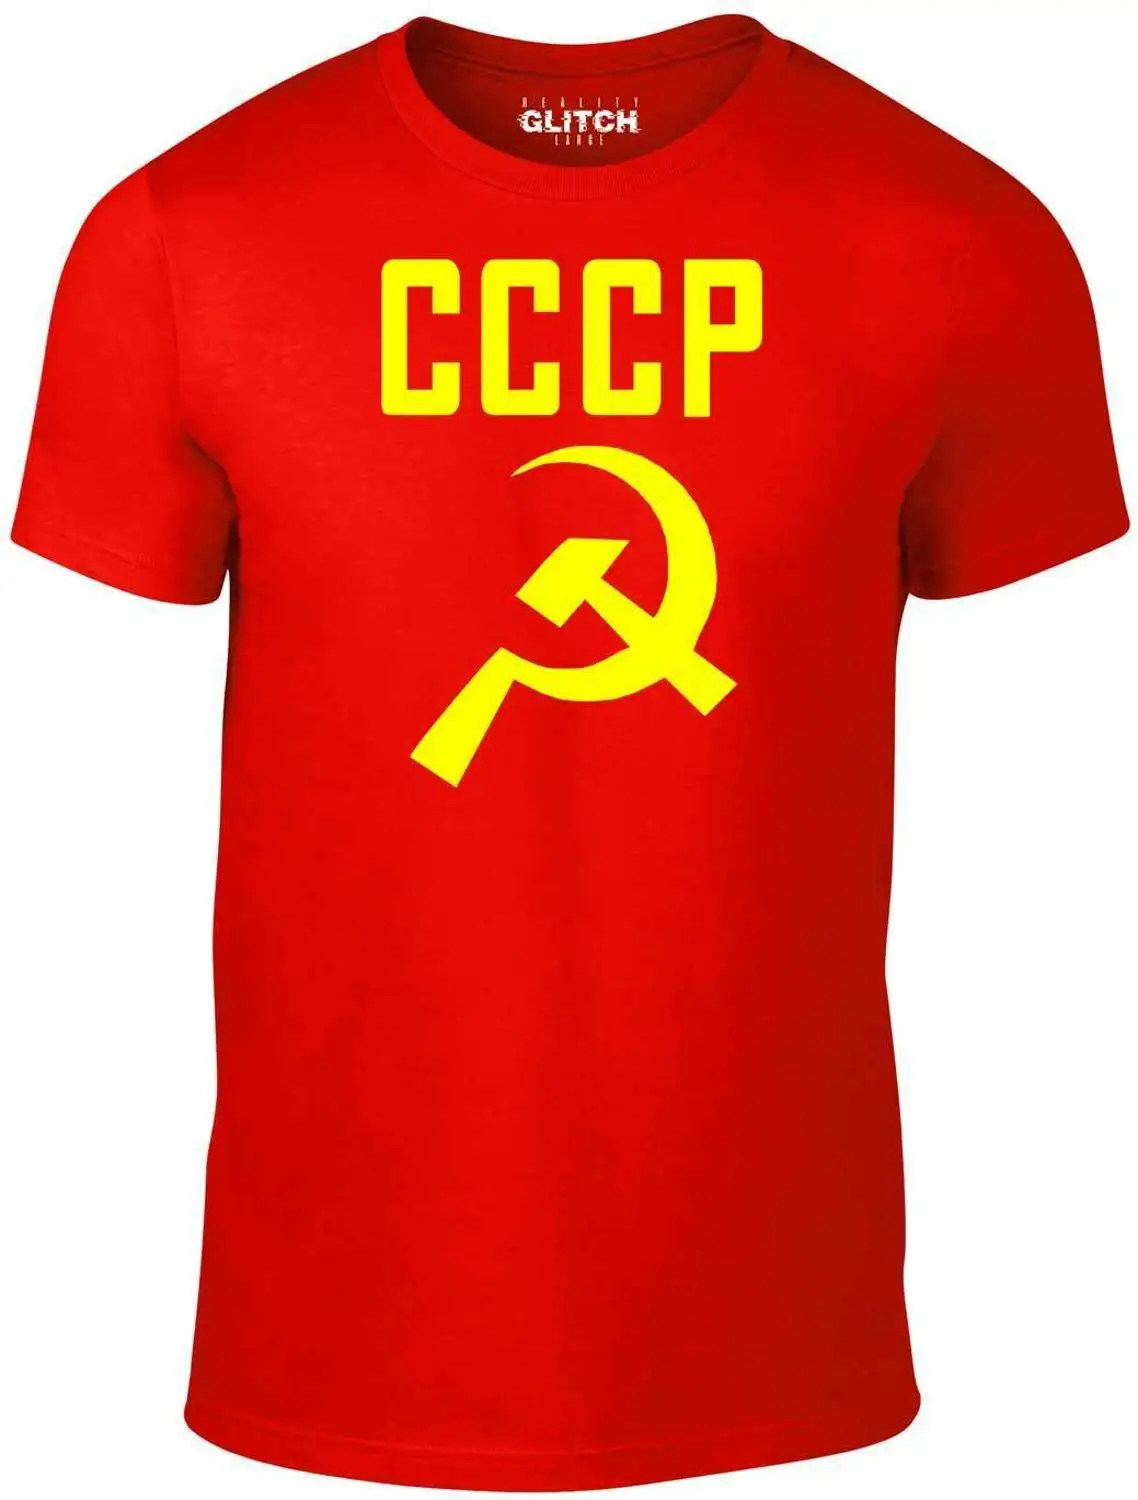 CCCP молоток и серп Футболка-коммунистическая Коммунистическая Россия, красная звезда, высокое качество, Мужская Летняя мода 2019